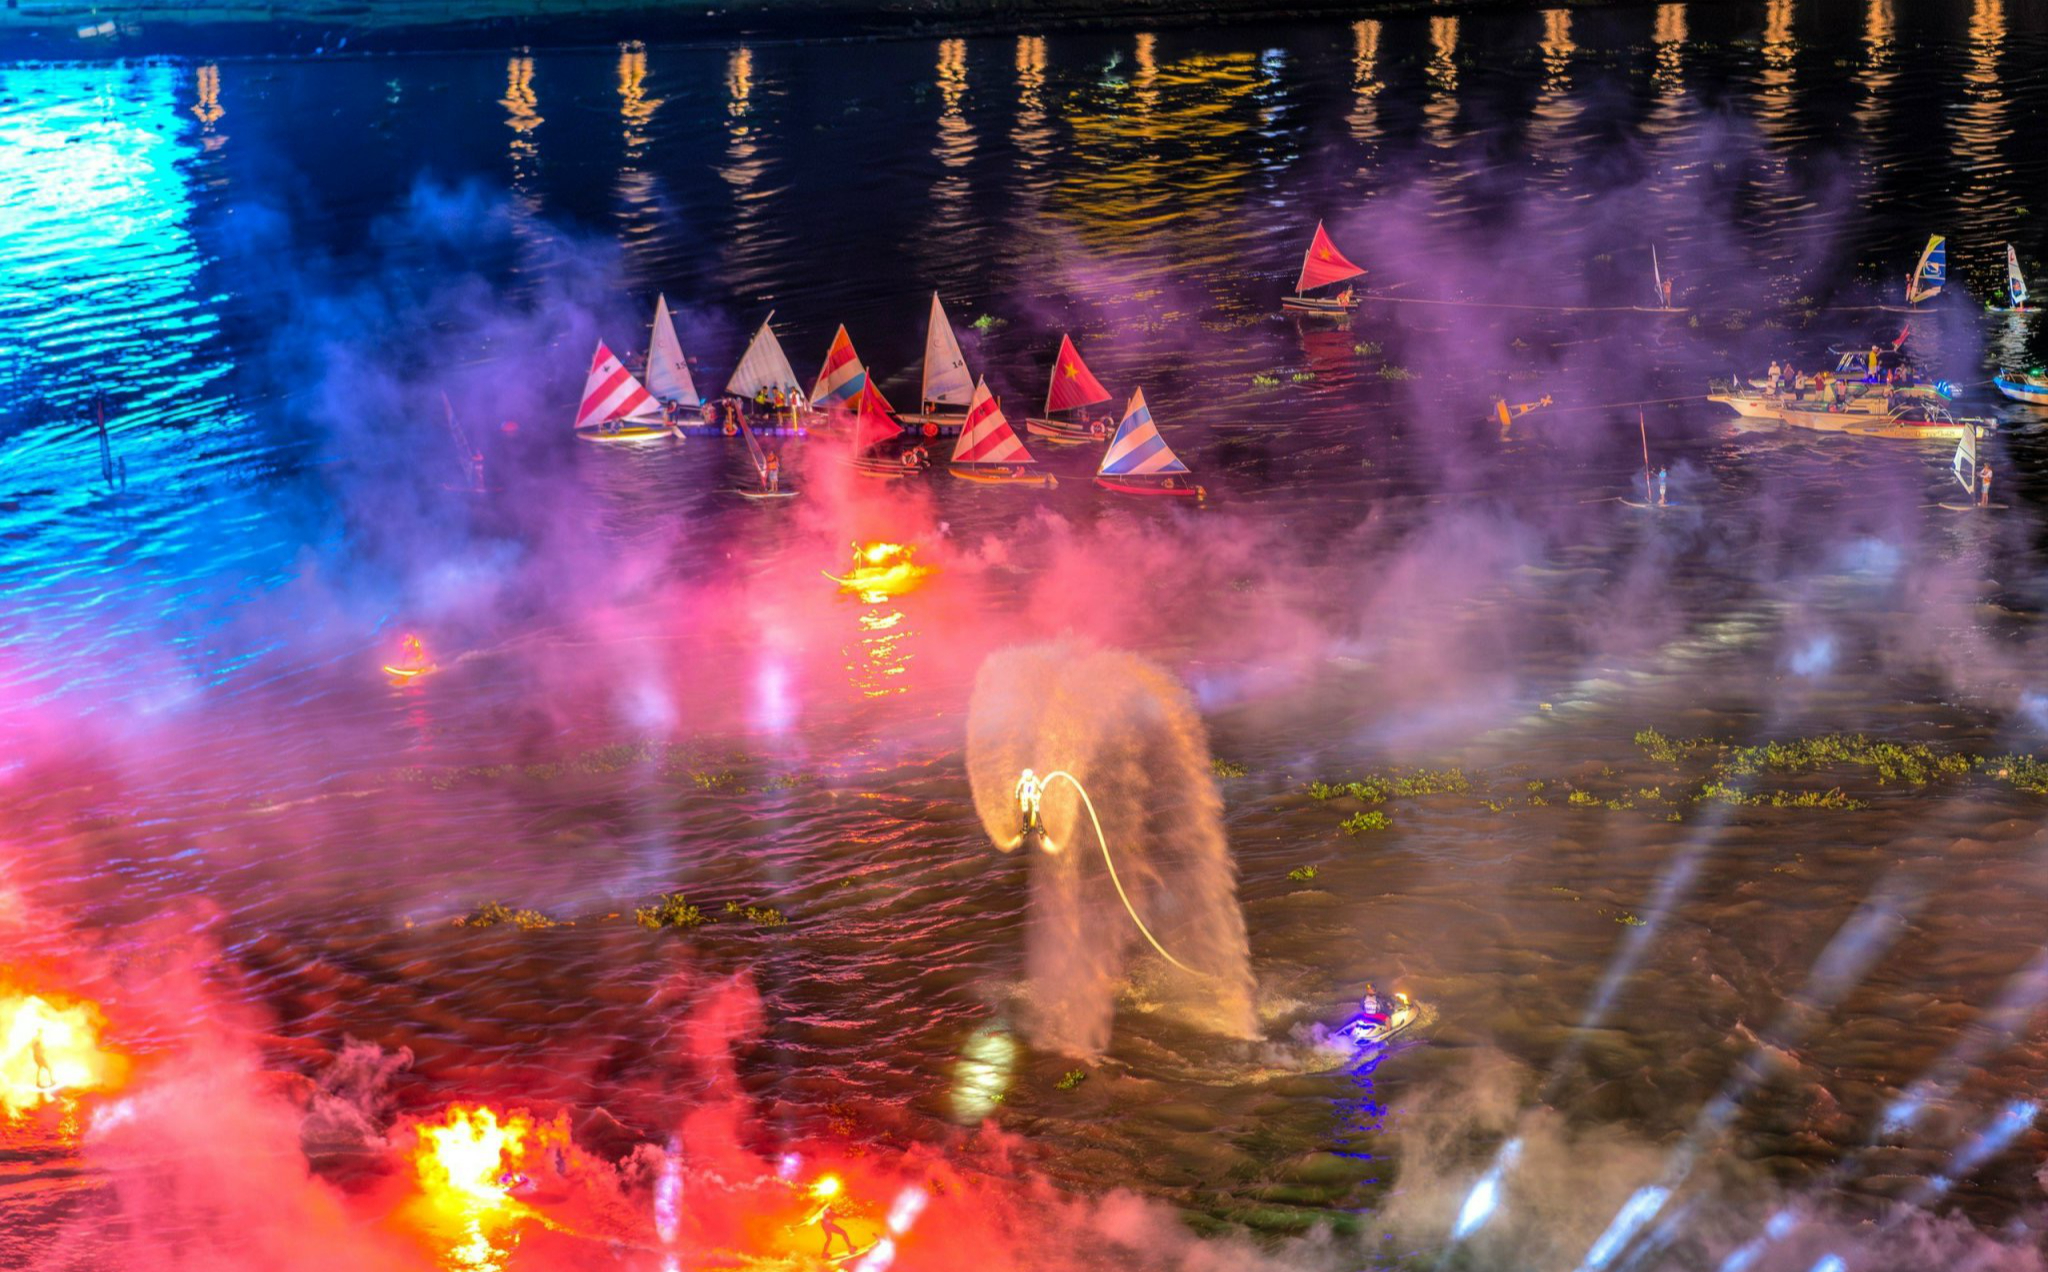 Lễ hội Sông nước TP. Hồ Chí Minh lần 2 khép lại với màn biểu diễn nghệ thuật ấn tượng